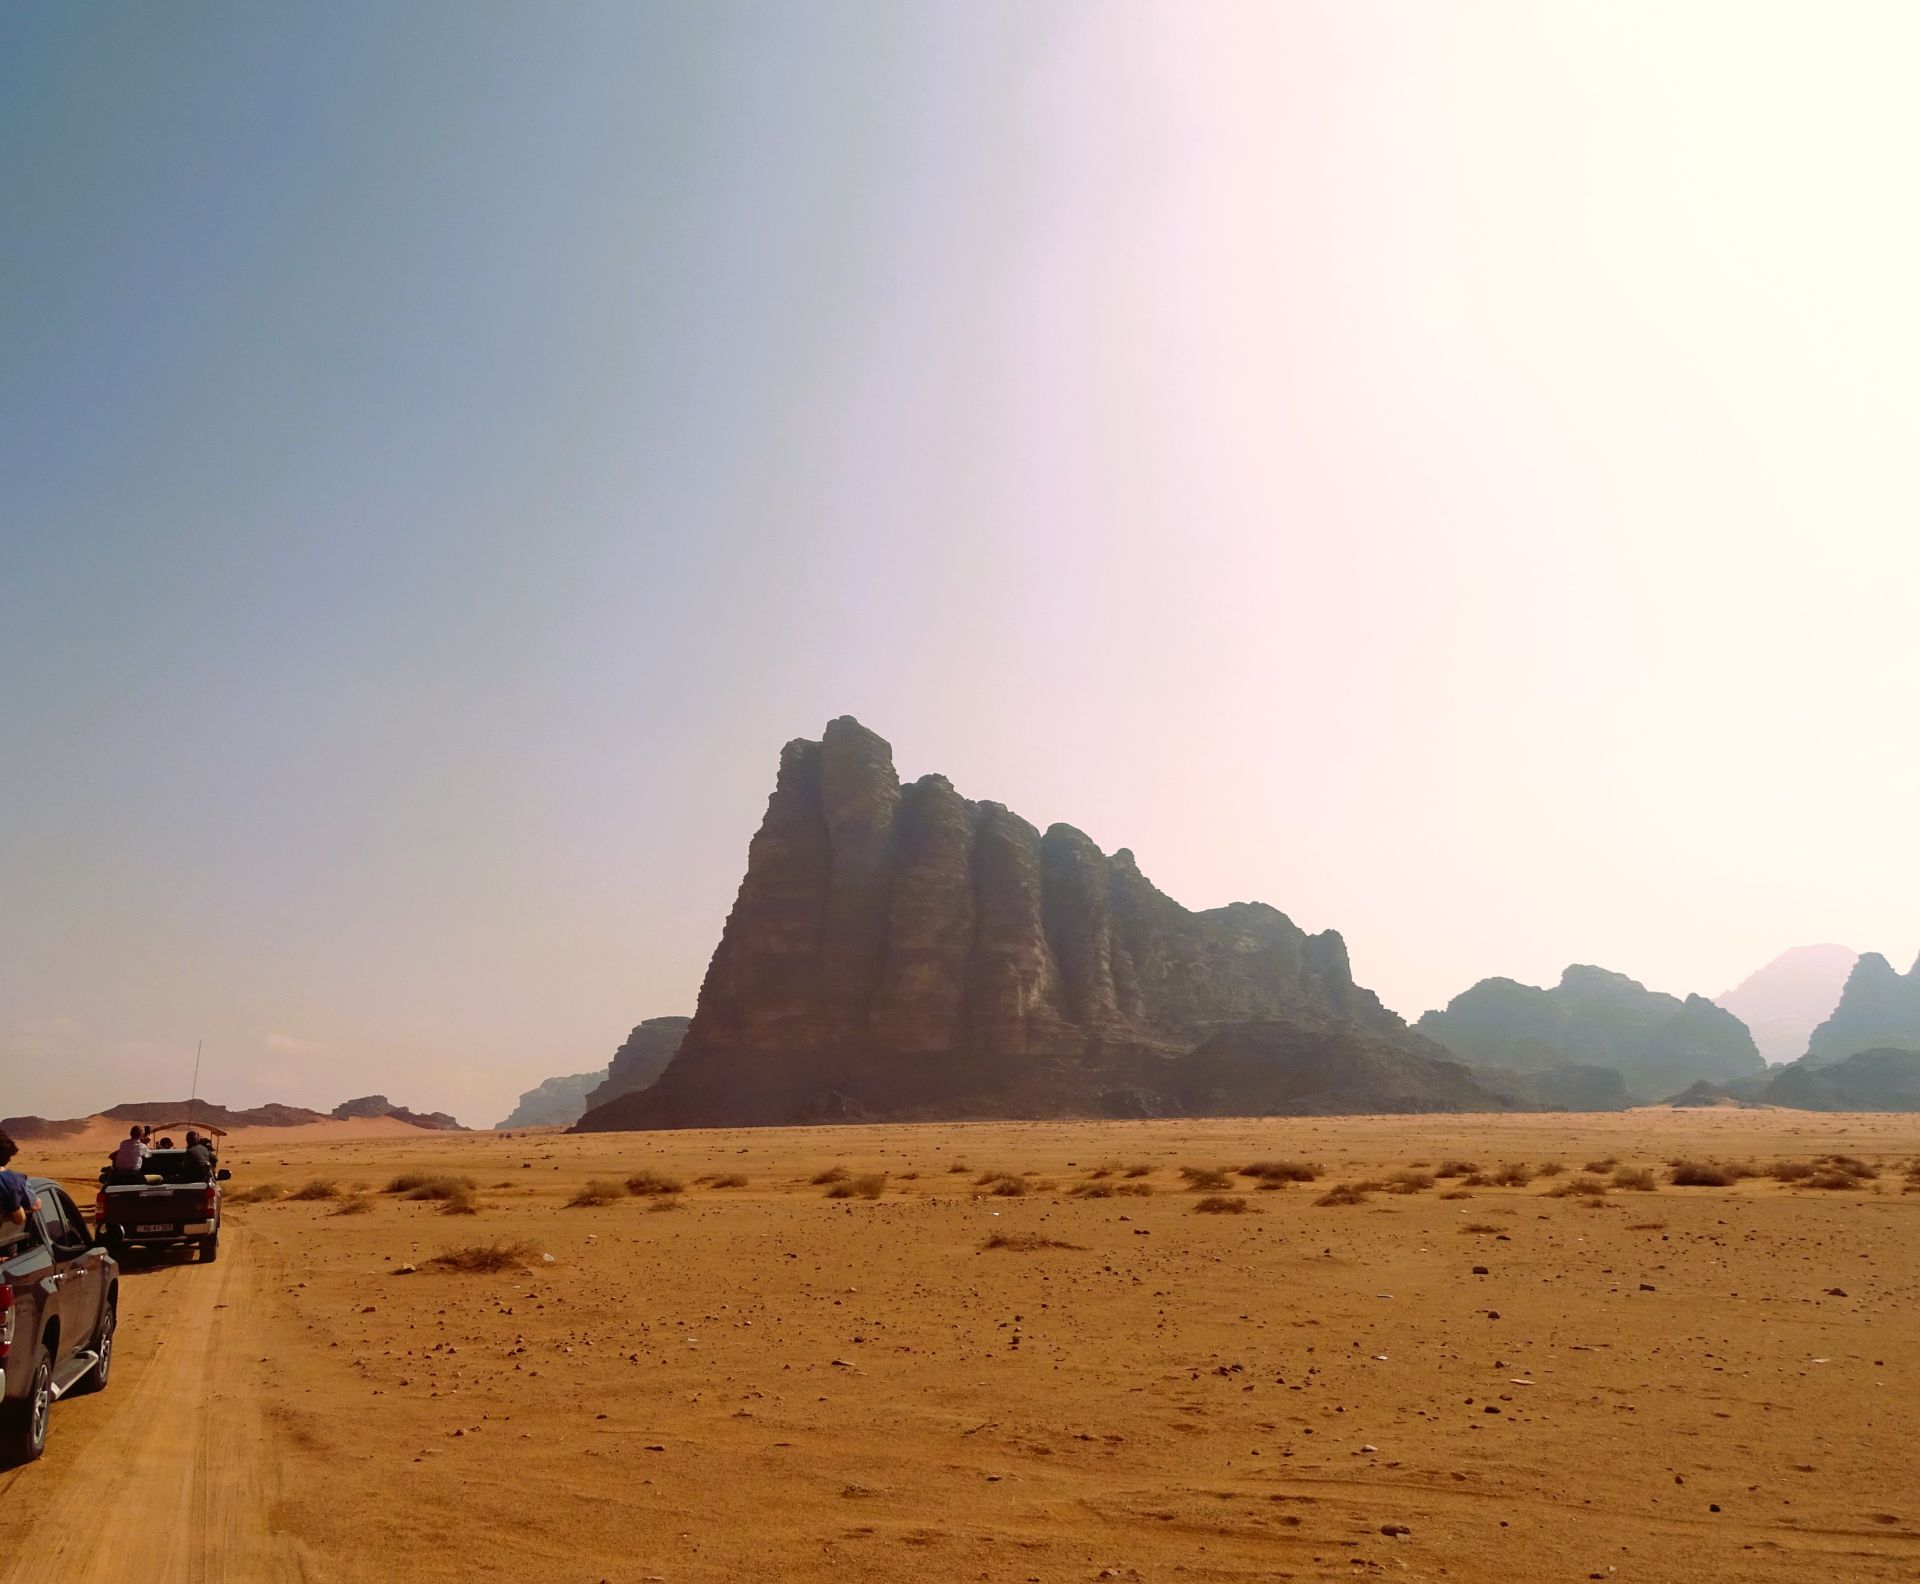 Giordania Wadi Rum in 4x4 